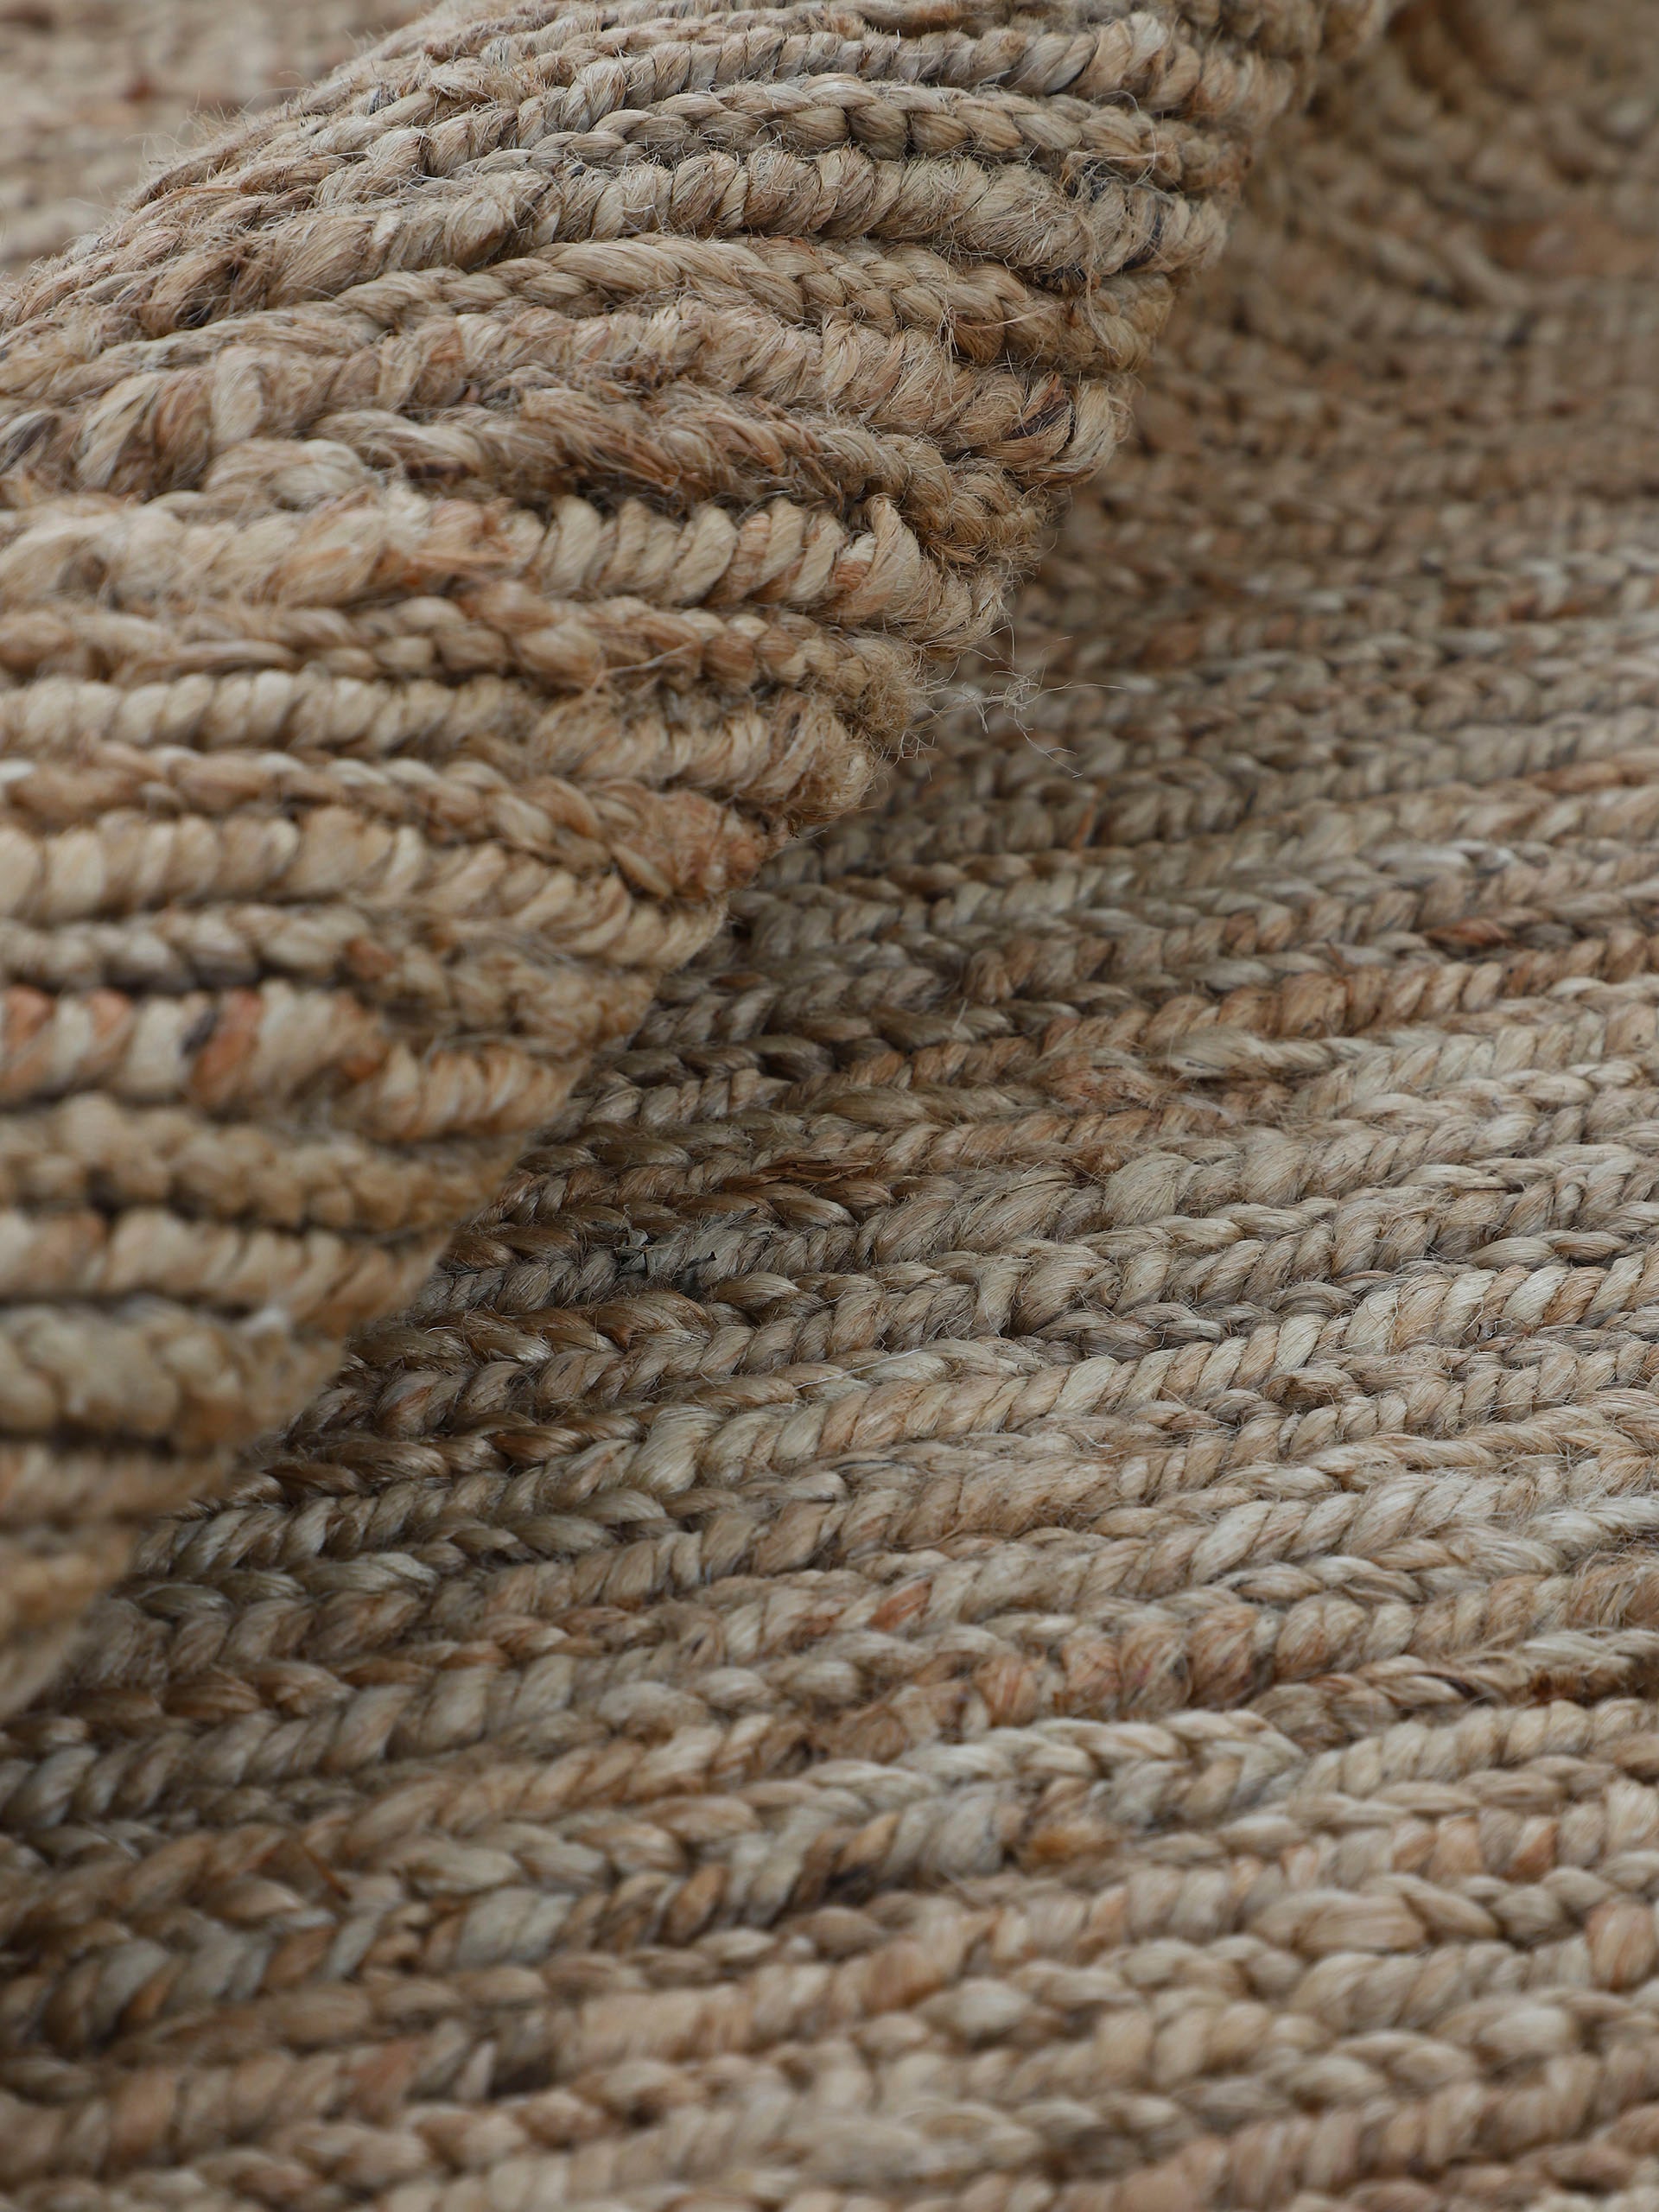 carpetfine Teppich »Nala Juteteppich«, rund, wendbar, aus 100% Jute, in vielen Größen und Formen, quadratisch, rund